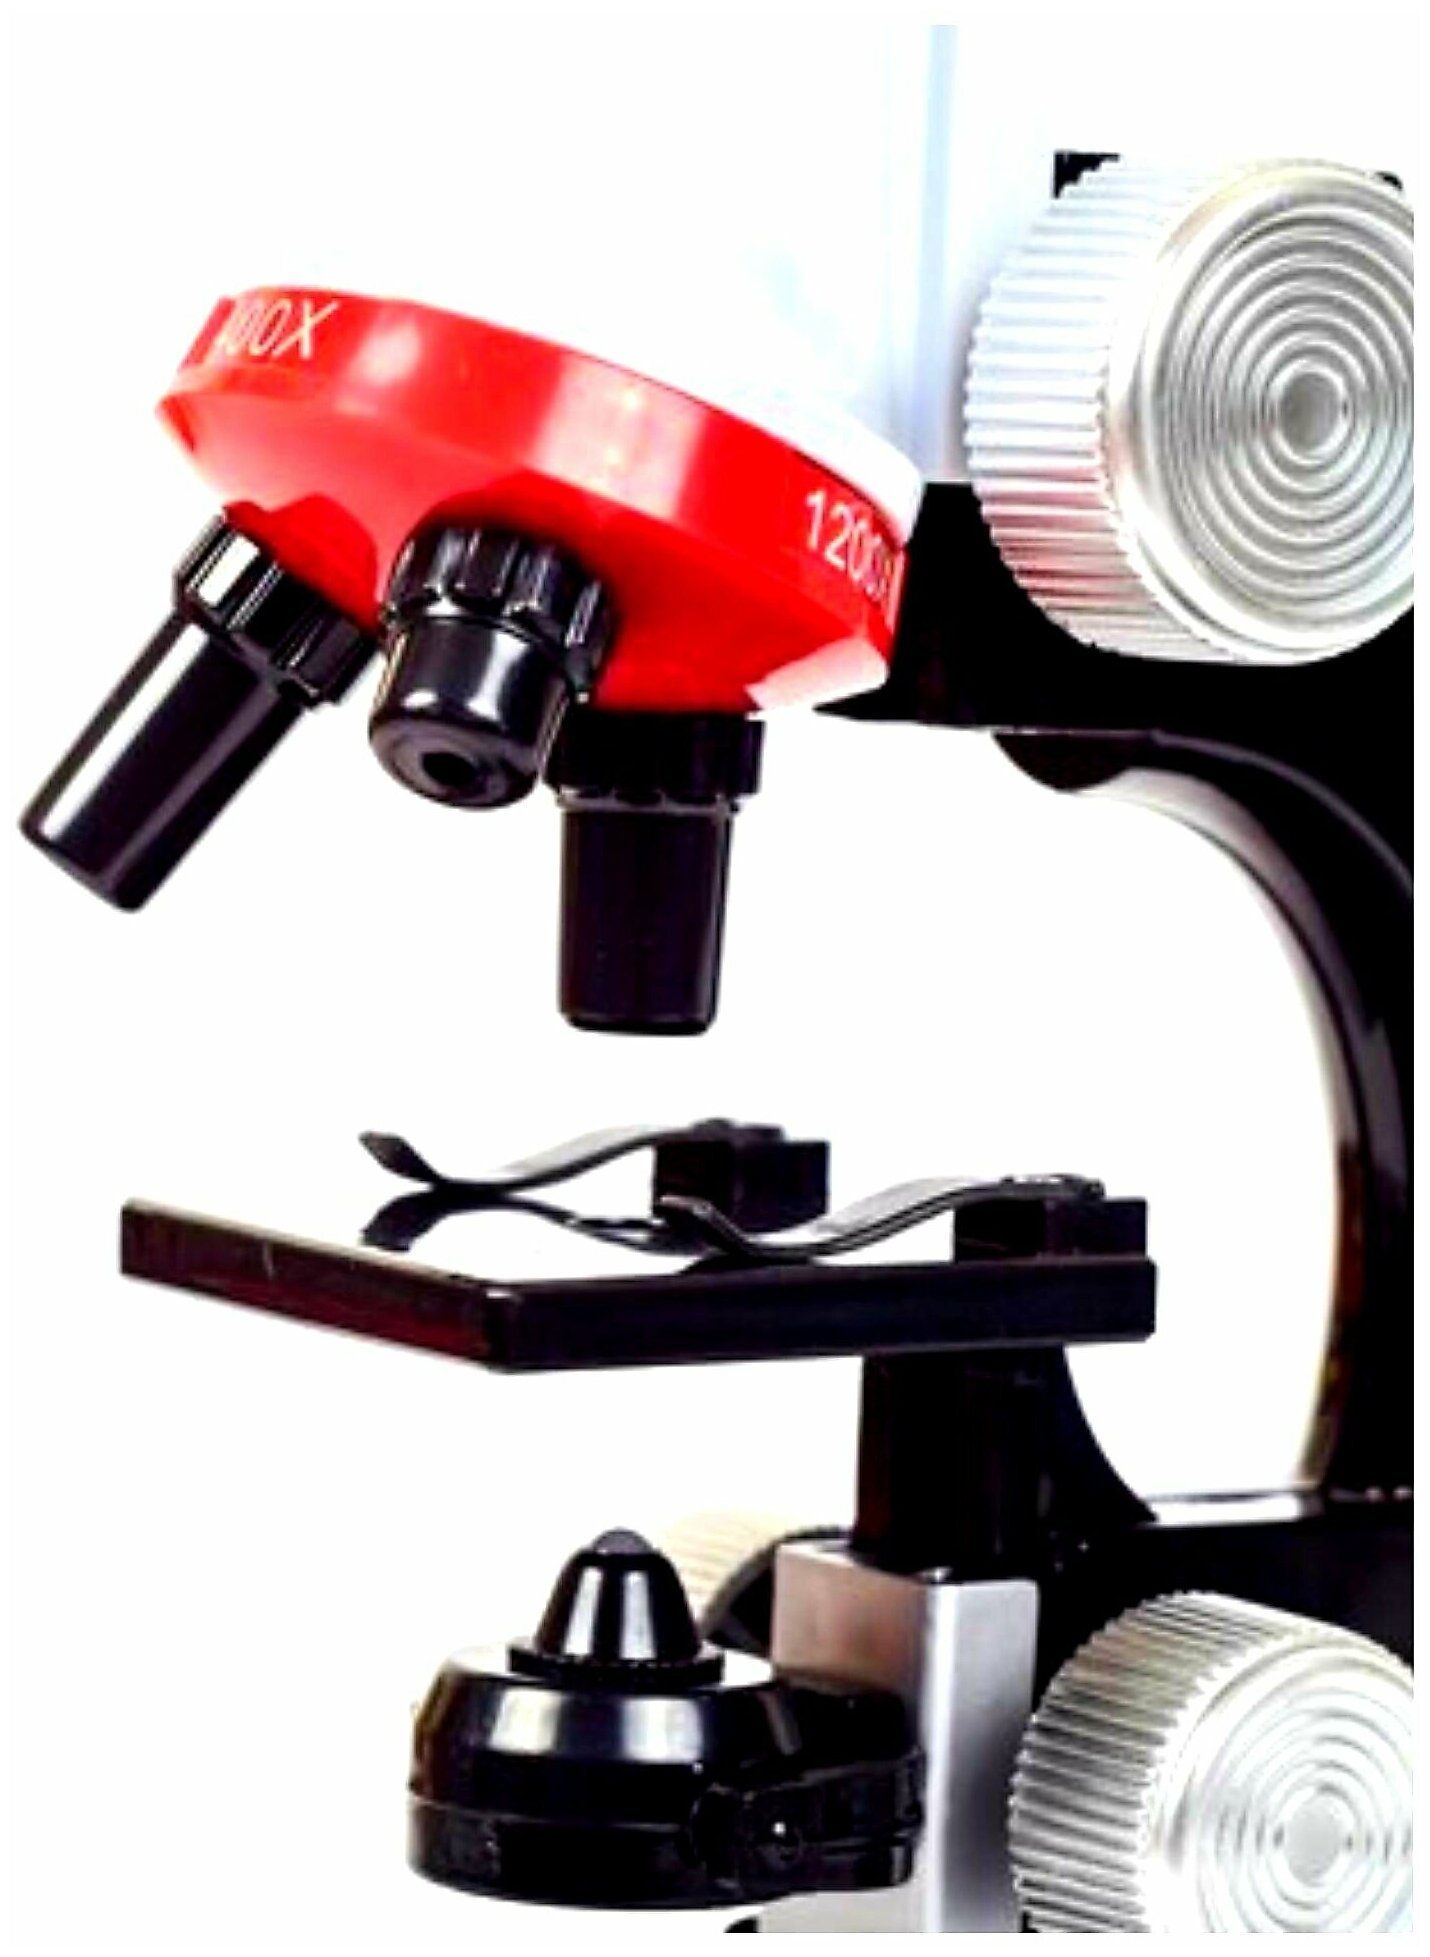 Микроскоп для детей с держателем для телефона для микросъемки увеличение X100 Х400 X1200/ Микроскоп детский/ Набор для исследований/ Увеличитель